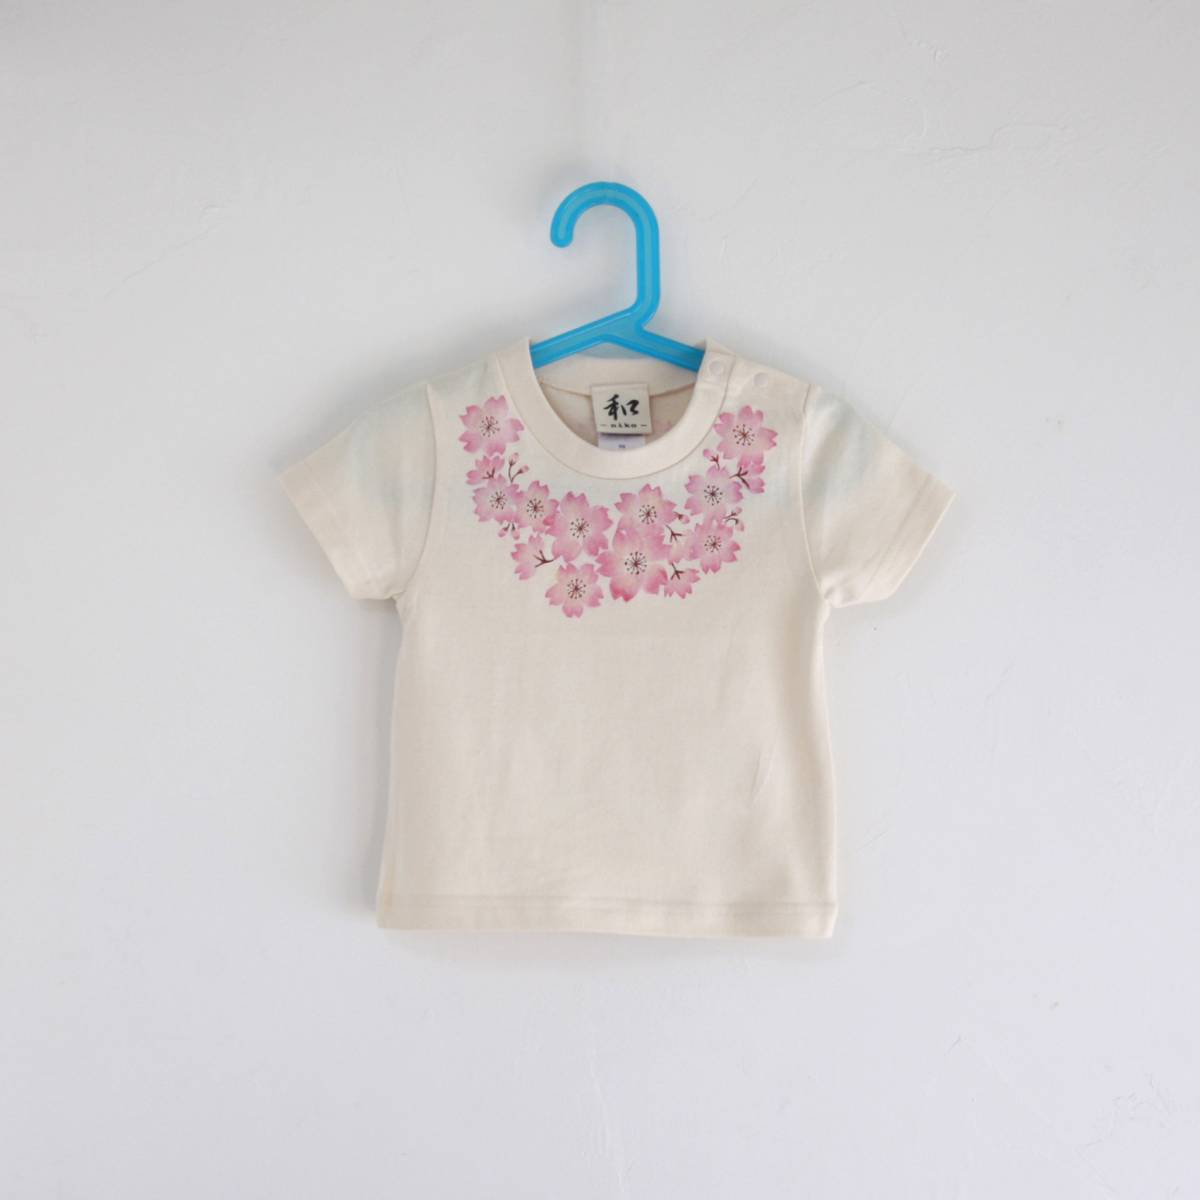 子供服 キッズTシャツ 120サイズ ナチュラル コサージュ桜柄 Tシャツ ハンドメイド 手描きTシャツ 和柄 春 プレゼント